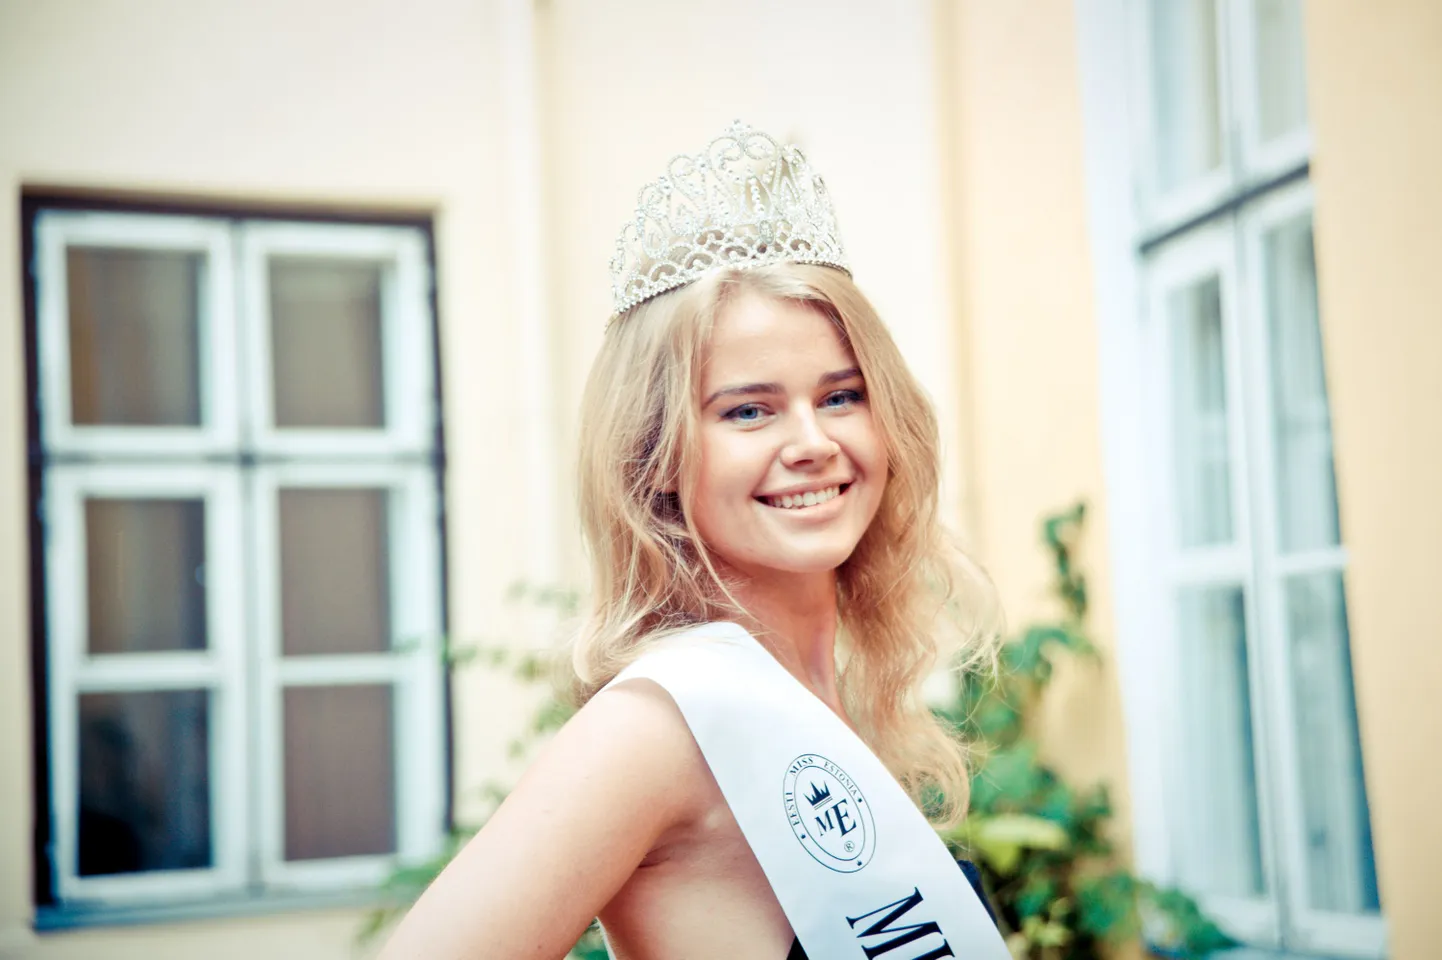 Miss Estonia 2012 Kätlin Valdmets.